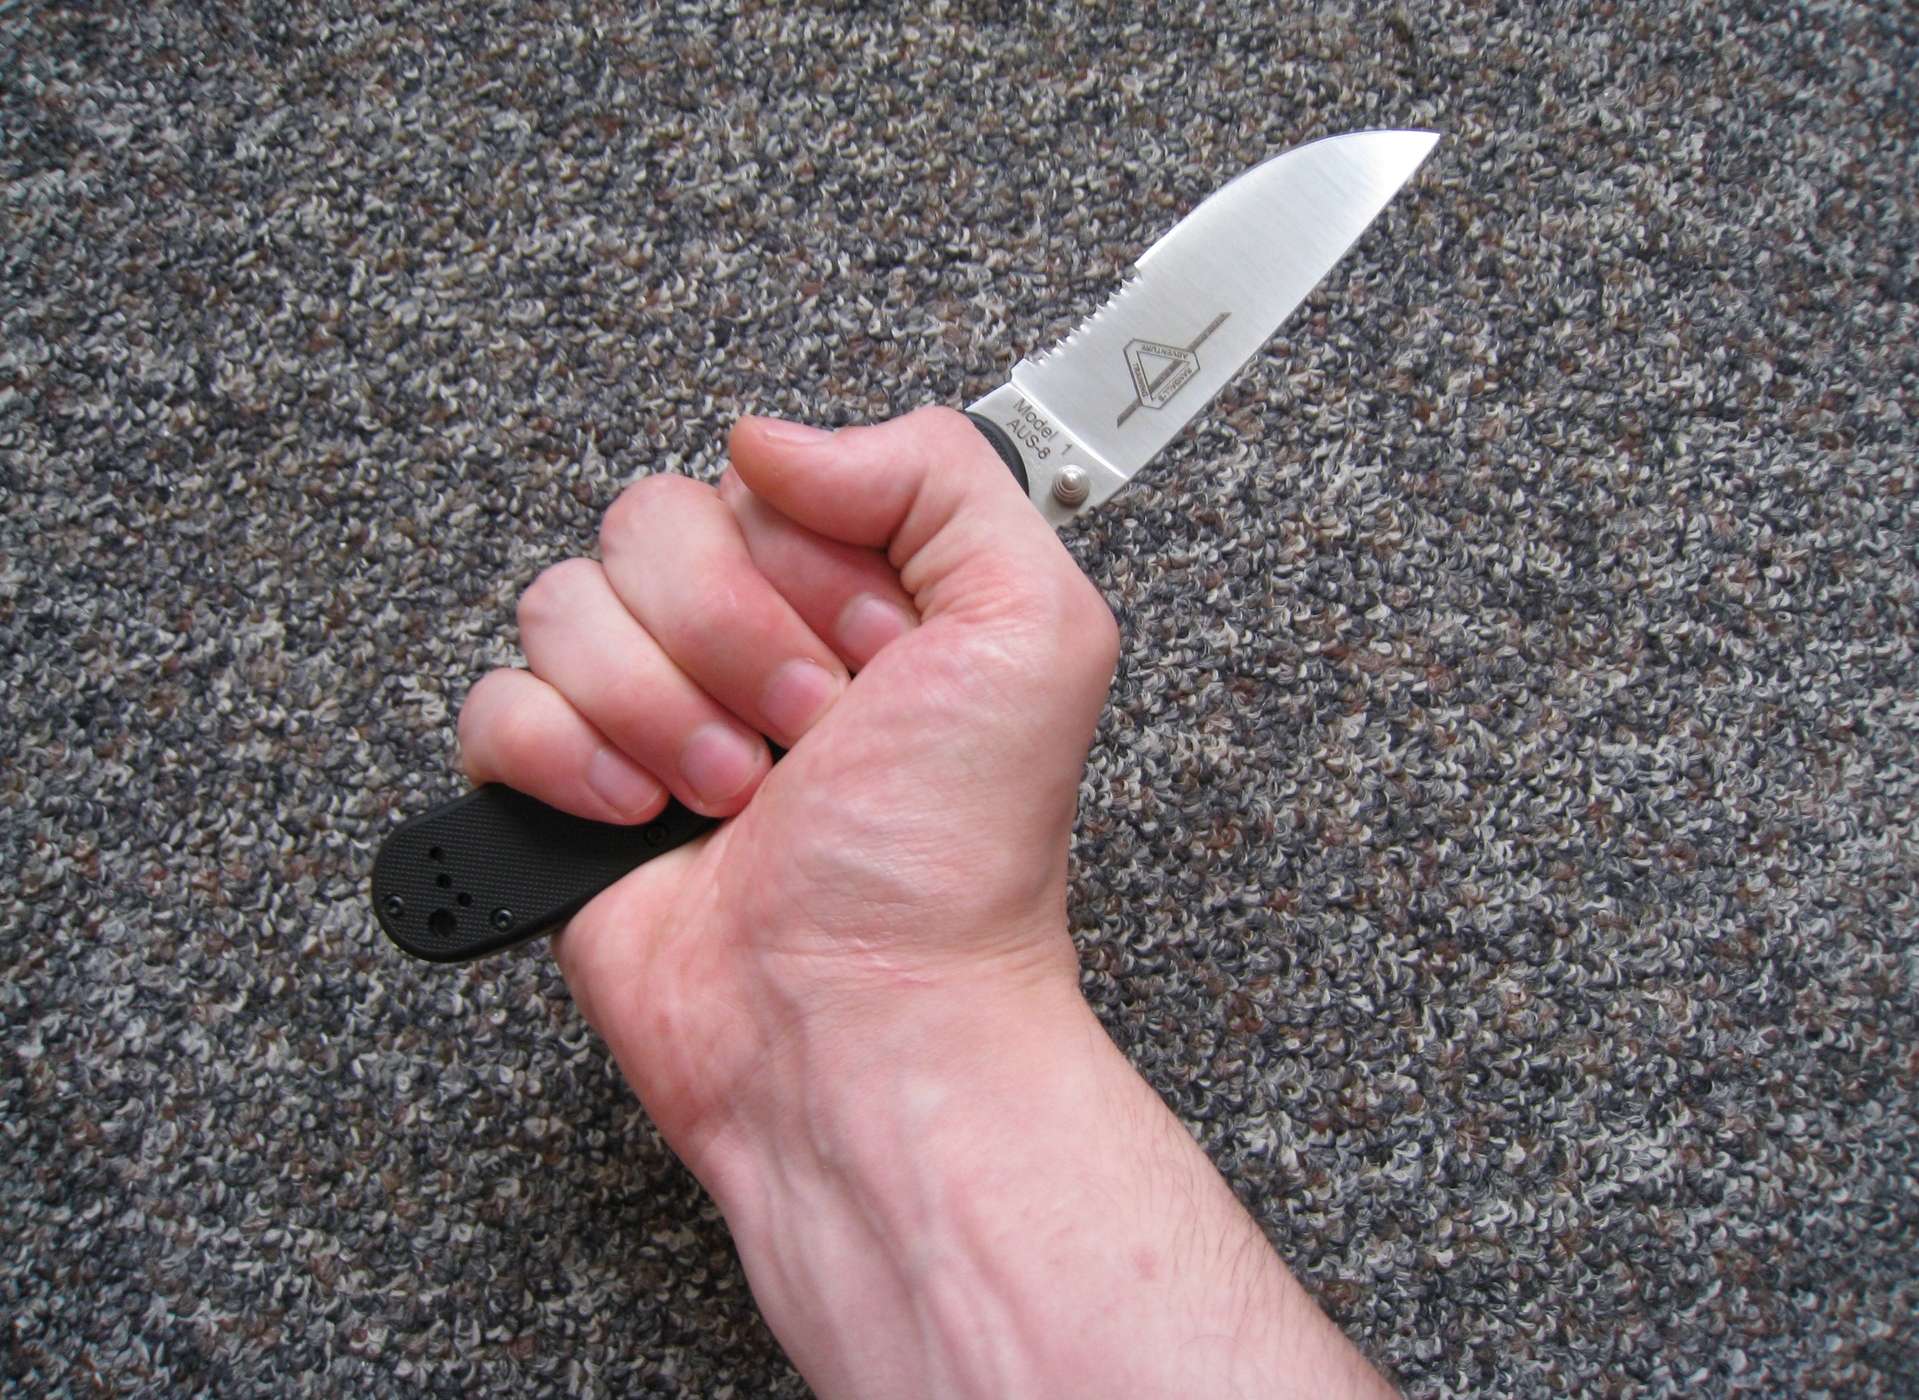 "Шутник", ударивший несколько раз студентку ножом, понесет уголовную ответственность